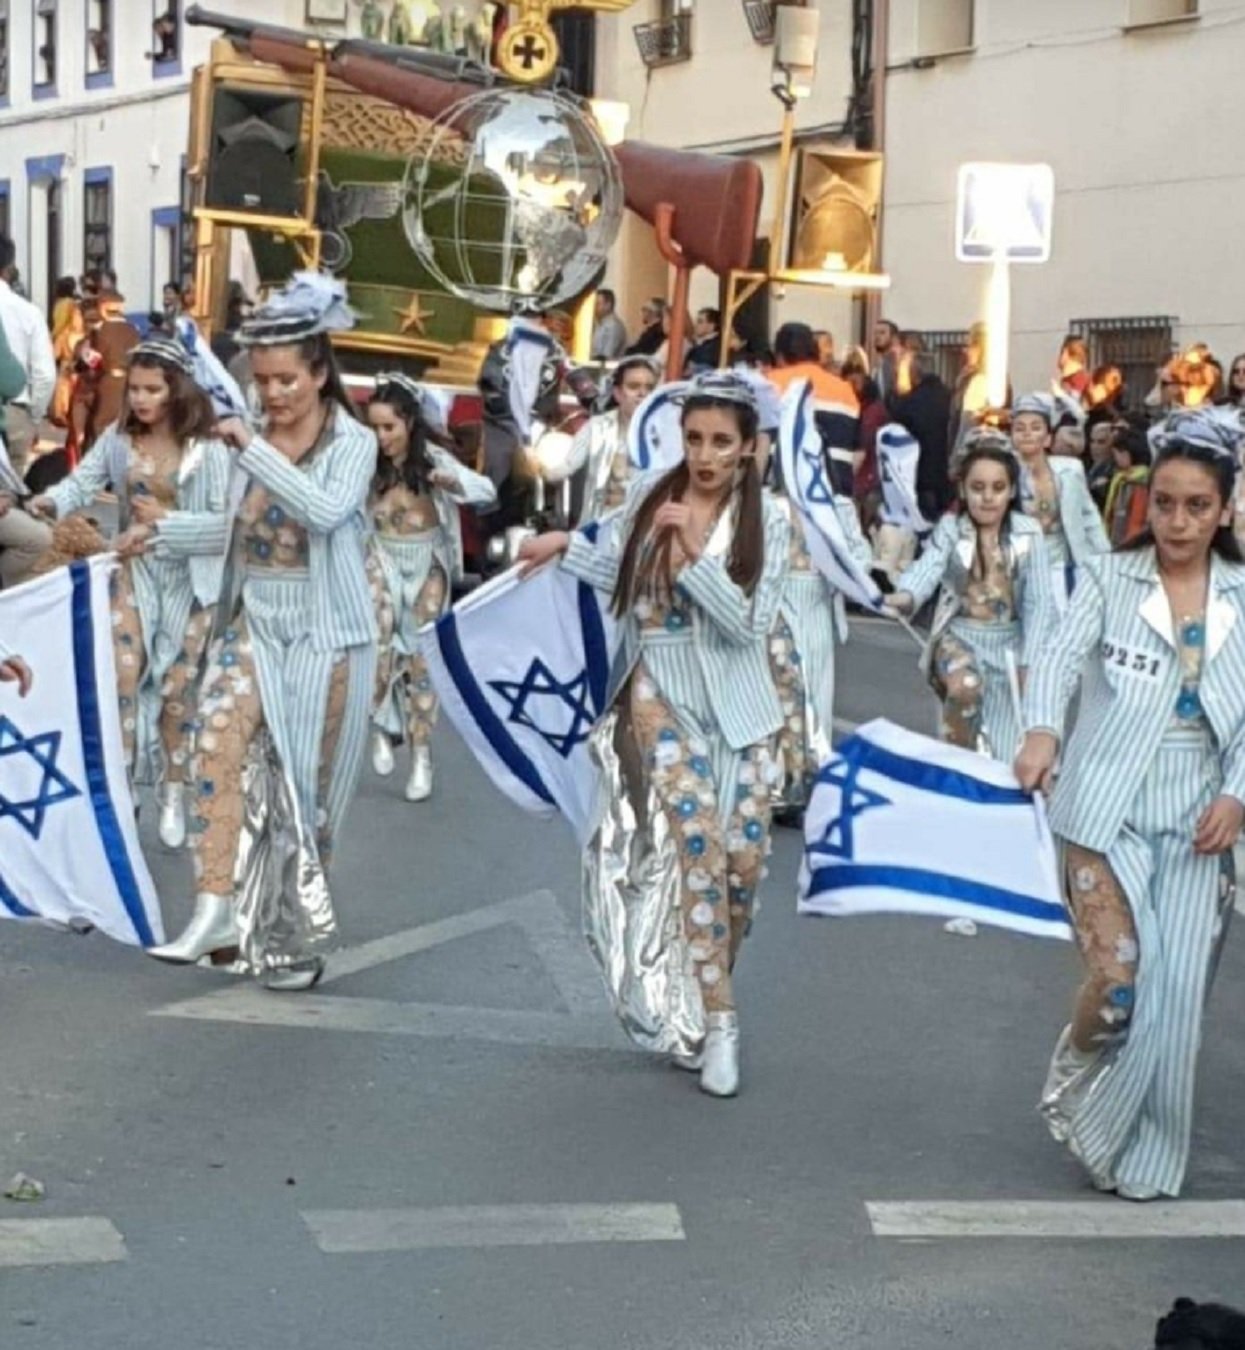 Fàstic: La rua de l'Holocaust al Carnaval de Castella-la Manxa. "No tienen puta vergüenza"